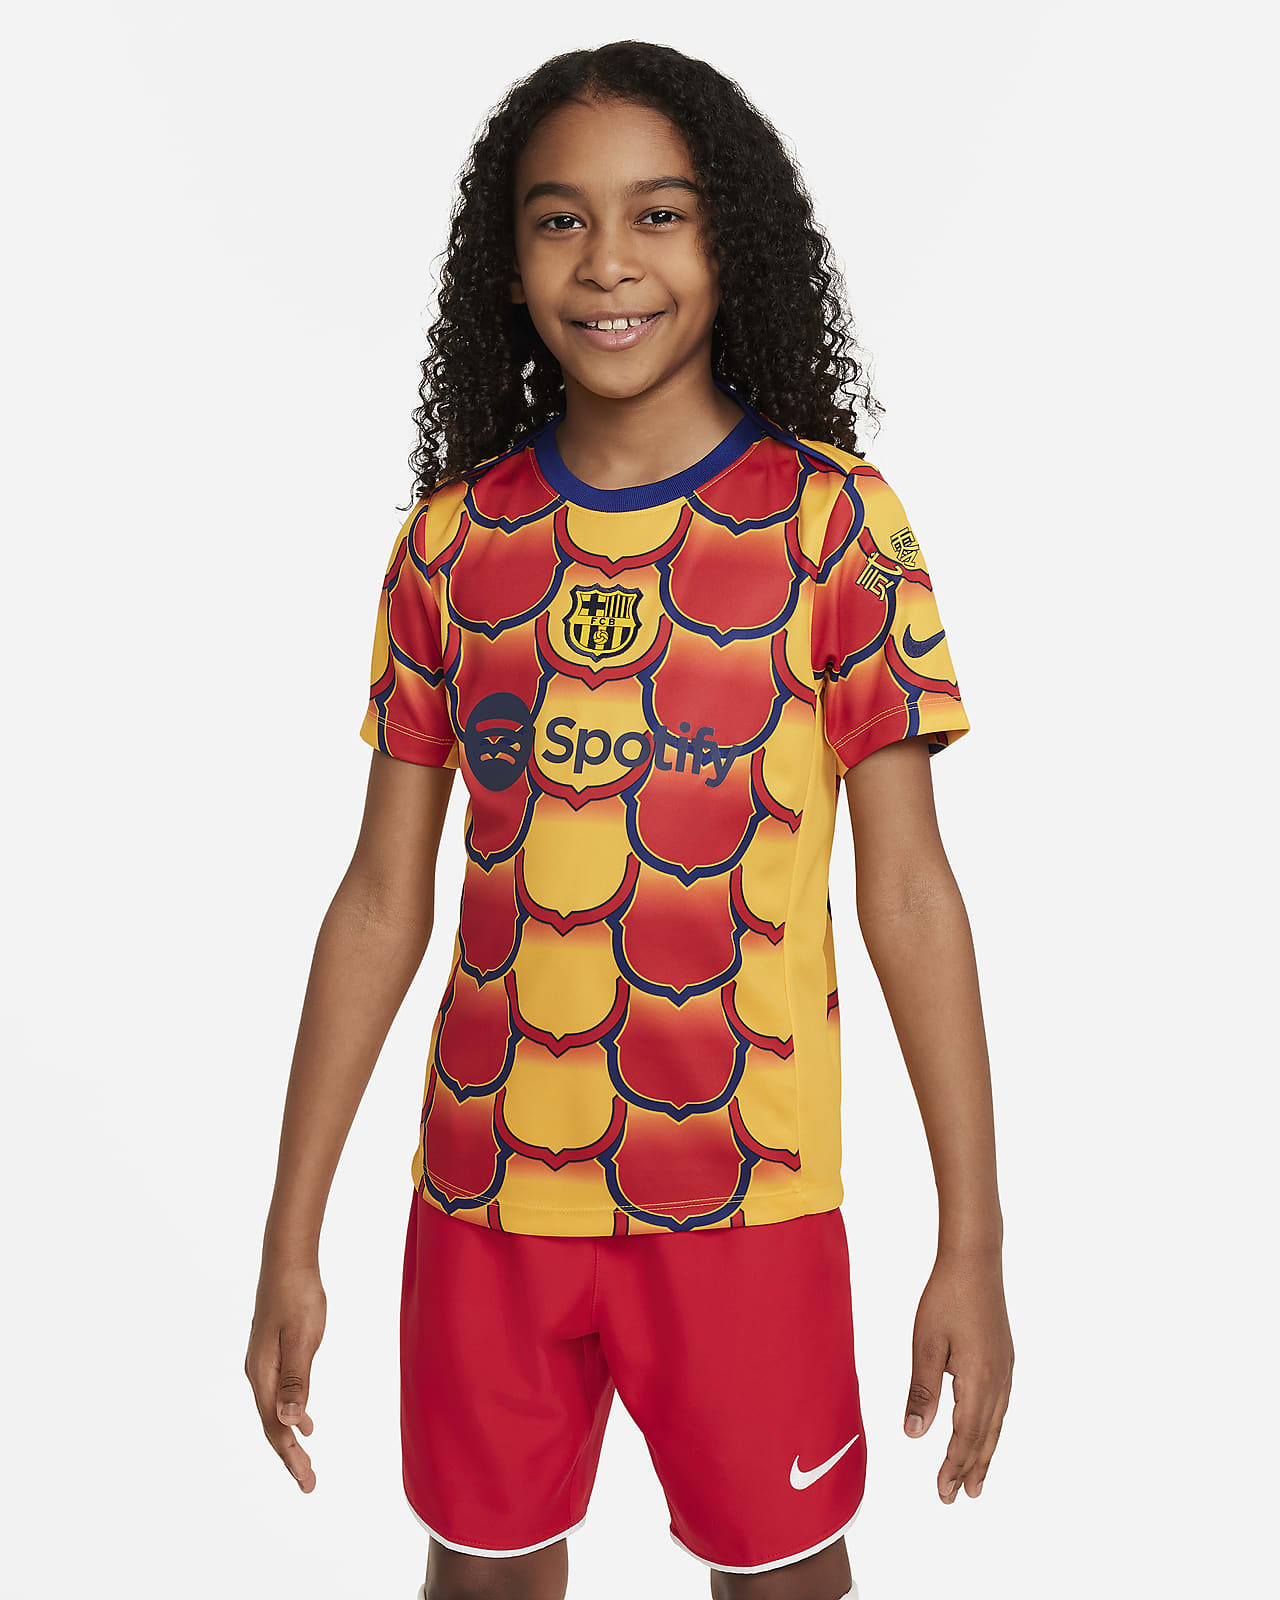 Ποδοσφαιρική μπλούζα προθέρμανσης Nike Dri-FIT Μπαρτσελόνα Academy Pro για μεγάλα παιδιά